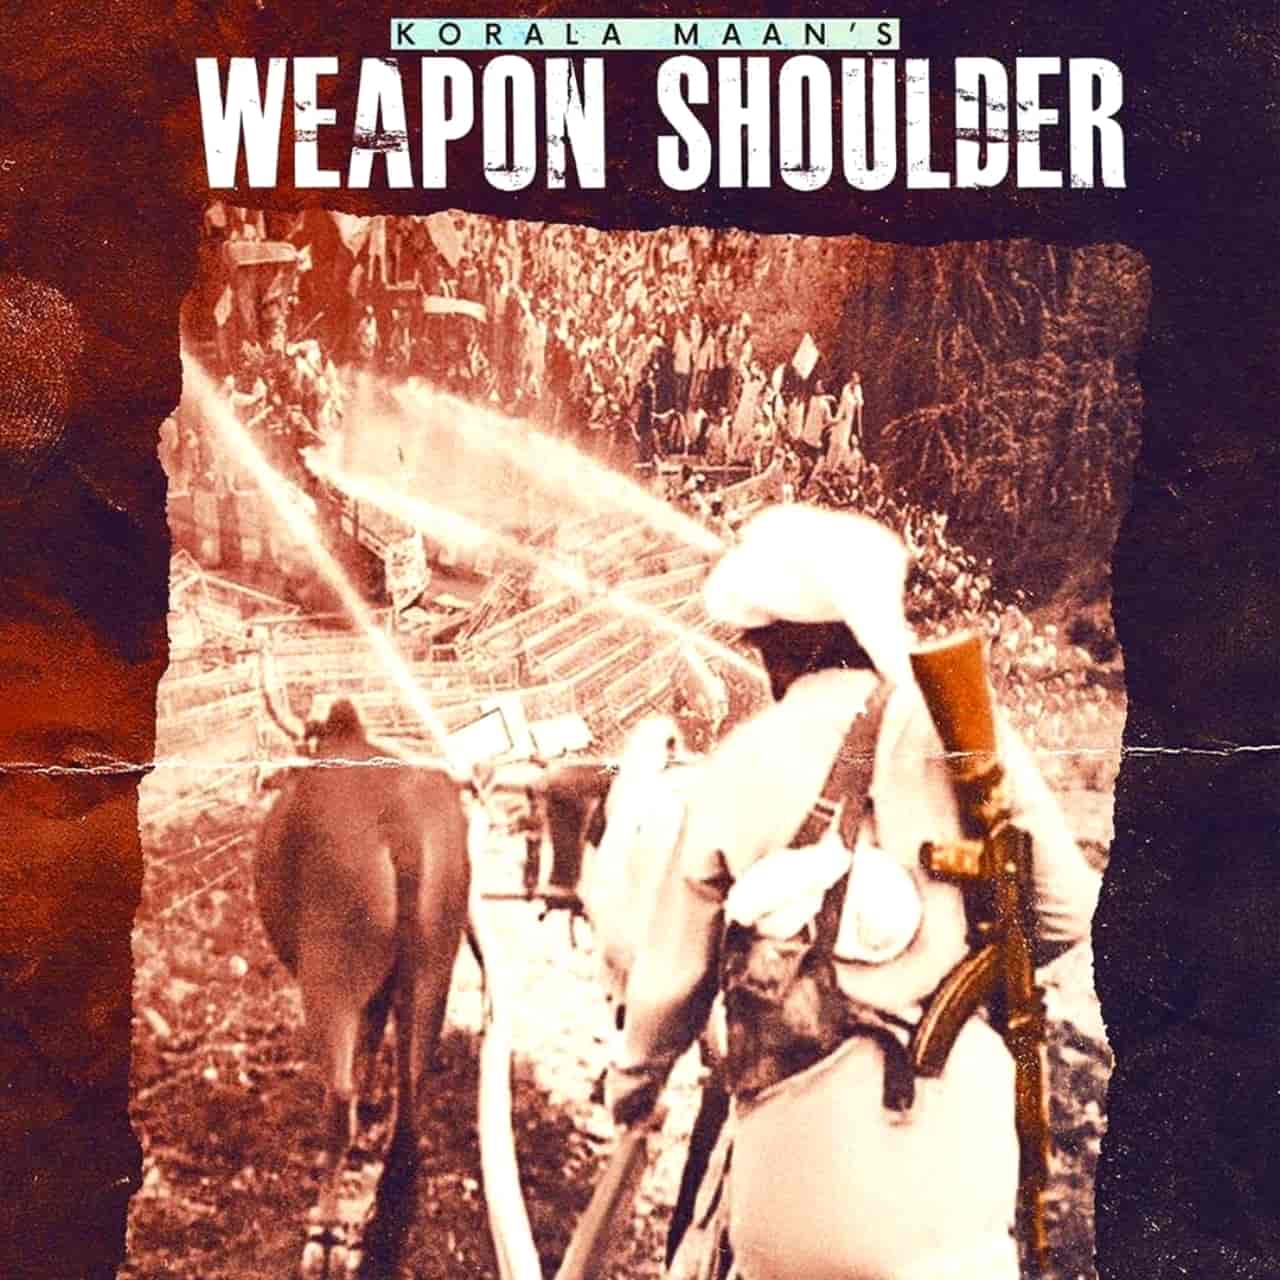 Weapon Soldier Punjabi Song Image Features Korala Maan